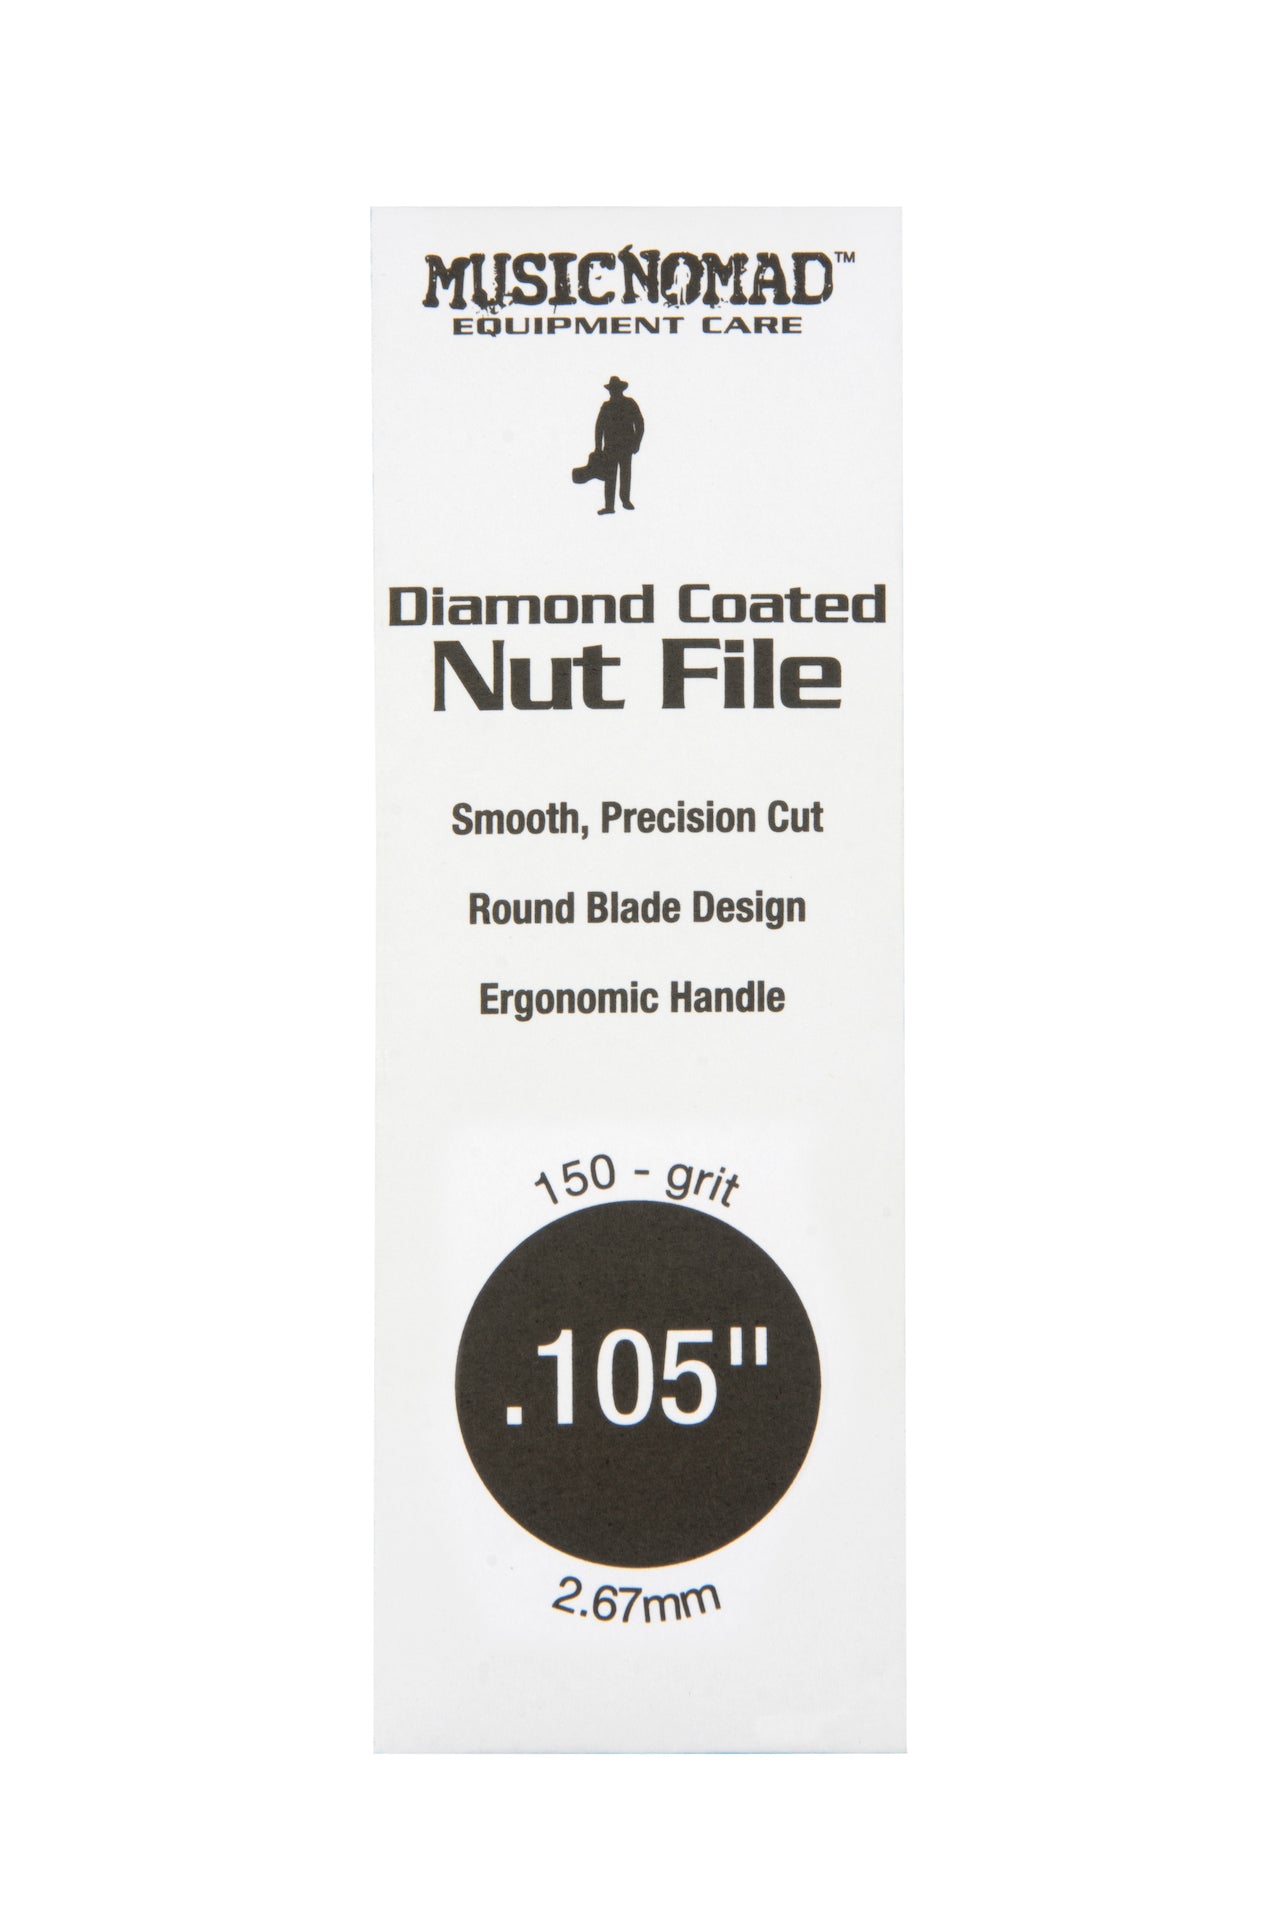 Music Nomad Diamond Coated Nut File Singles - HIENDGUITAR .105" .105" musicnomad musicnomad